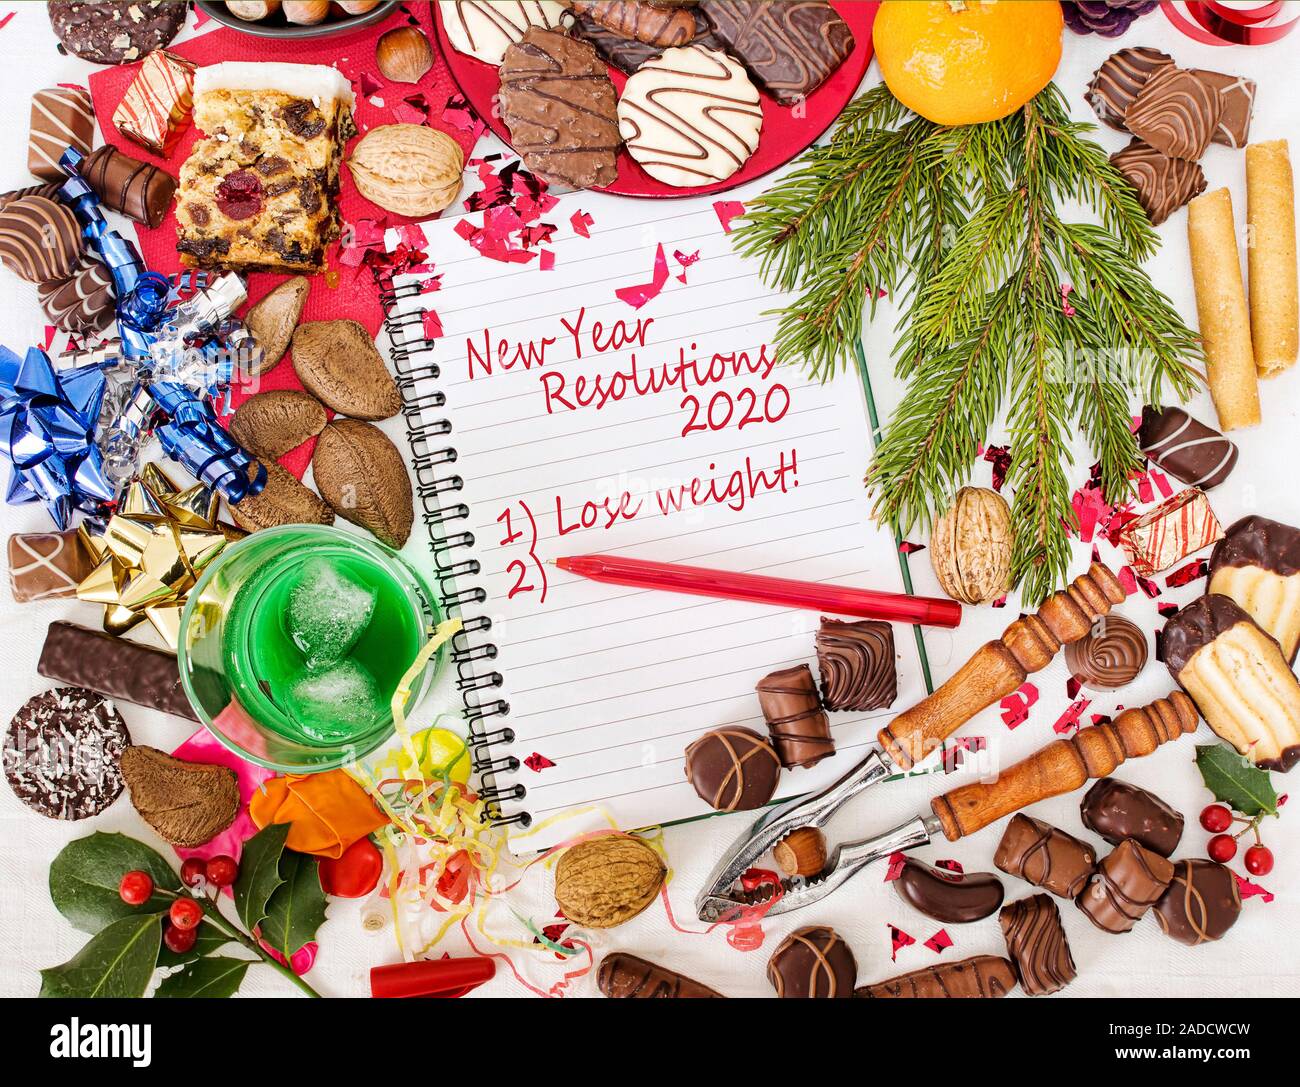 Pranzo Di Natale 2020.Pranzo Di Natale Festa E Nuovo Anno Risoluzione Alla Dieta 2020 Foto Stock Alamy